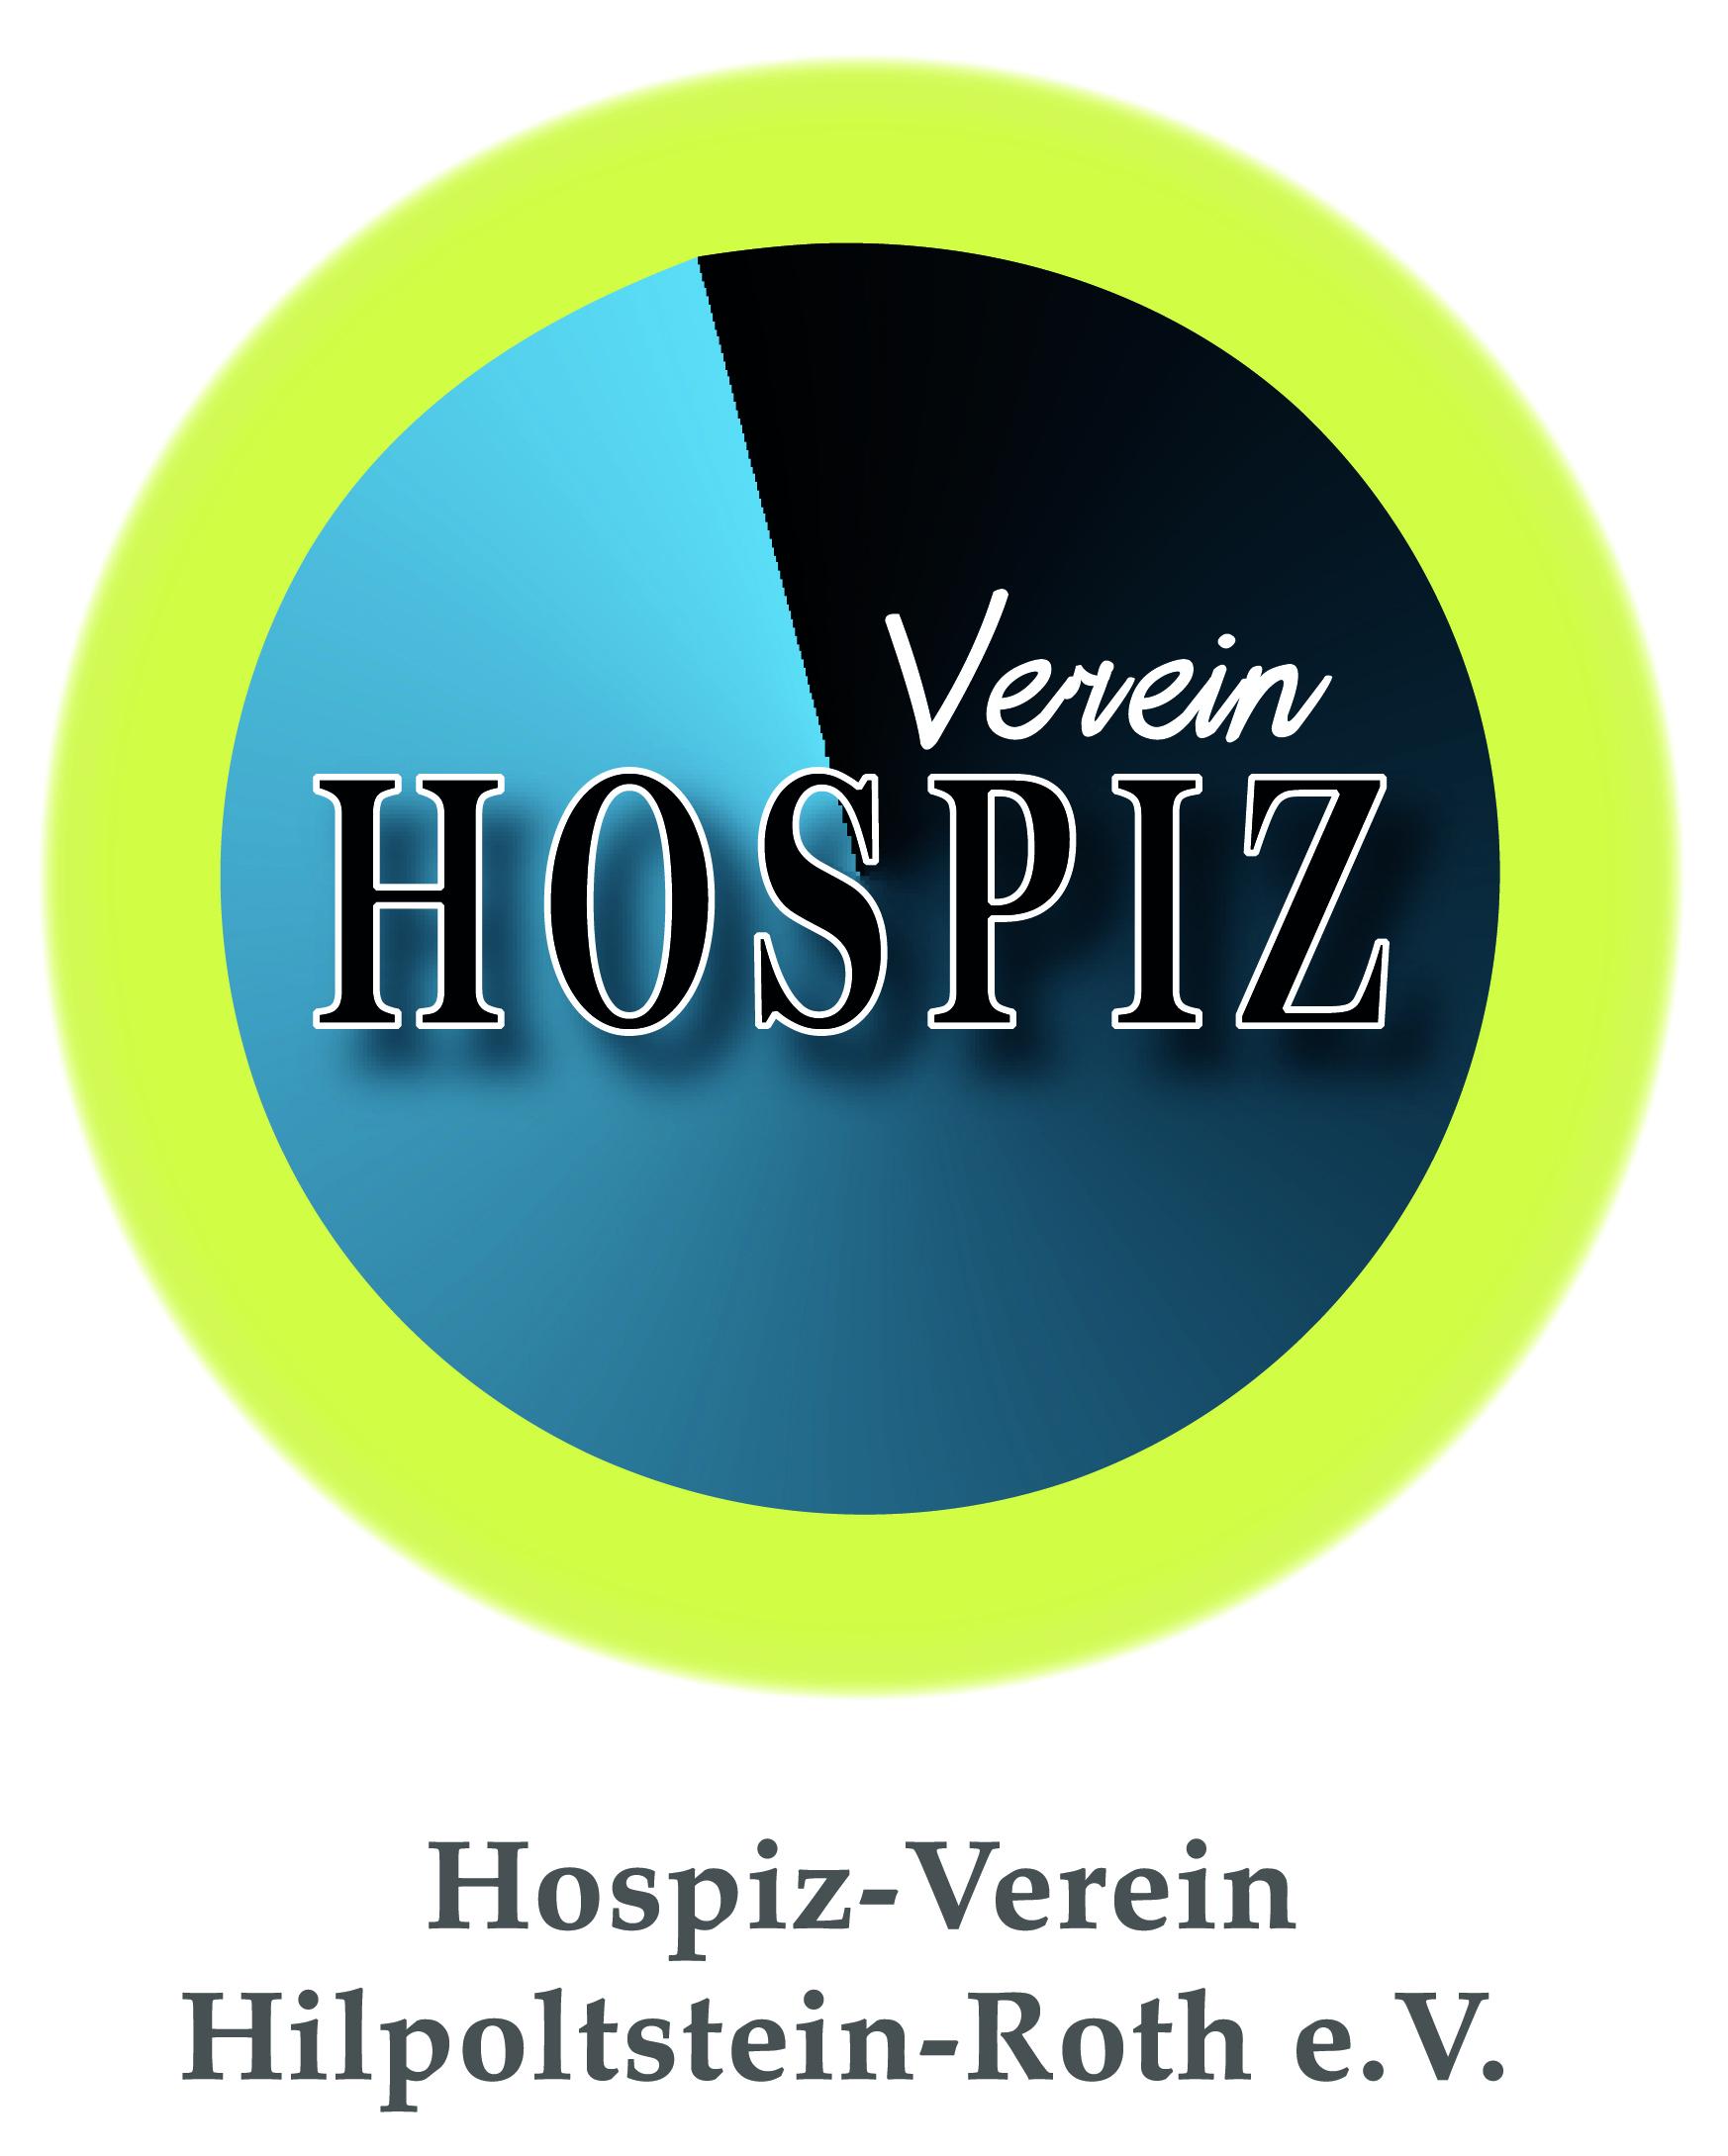 Hospiz-Verein Hilpoltstein-Roth e.V.